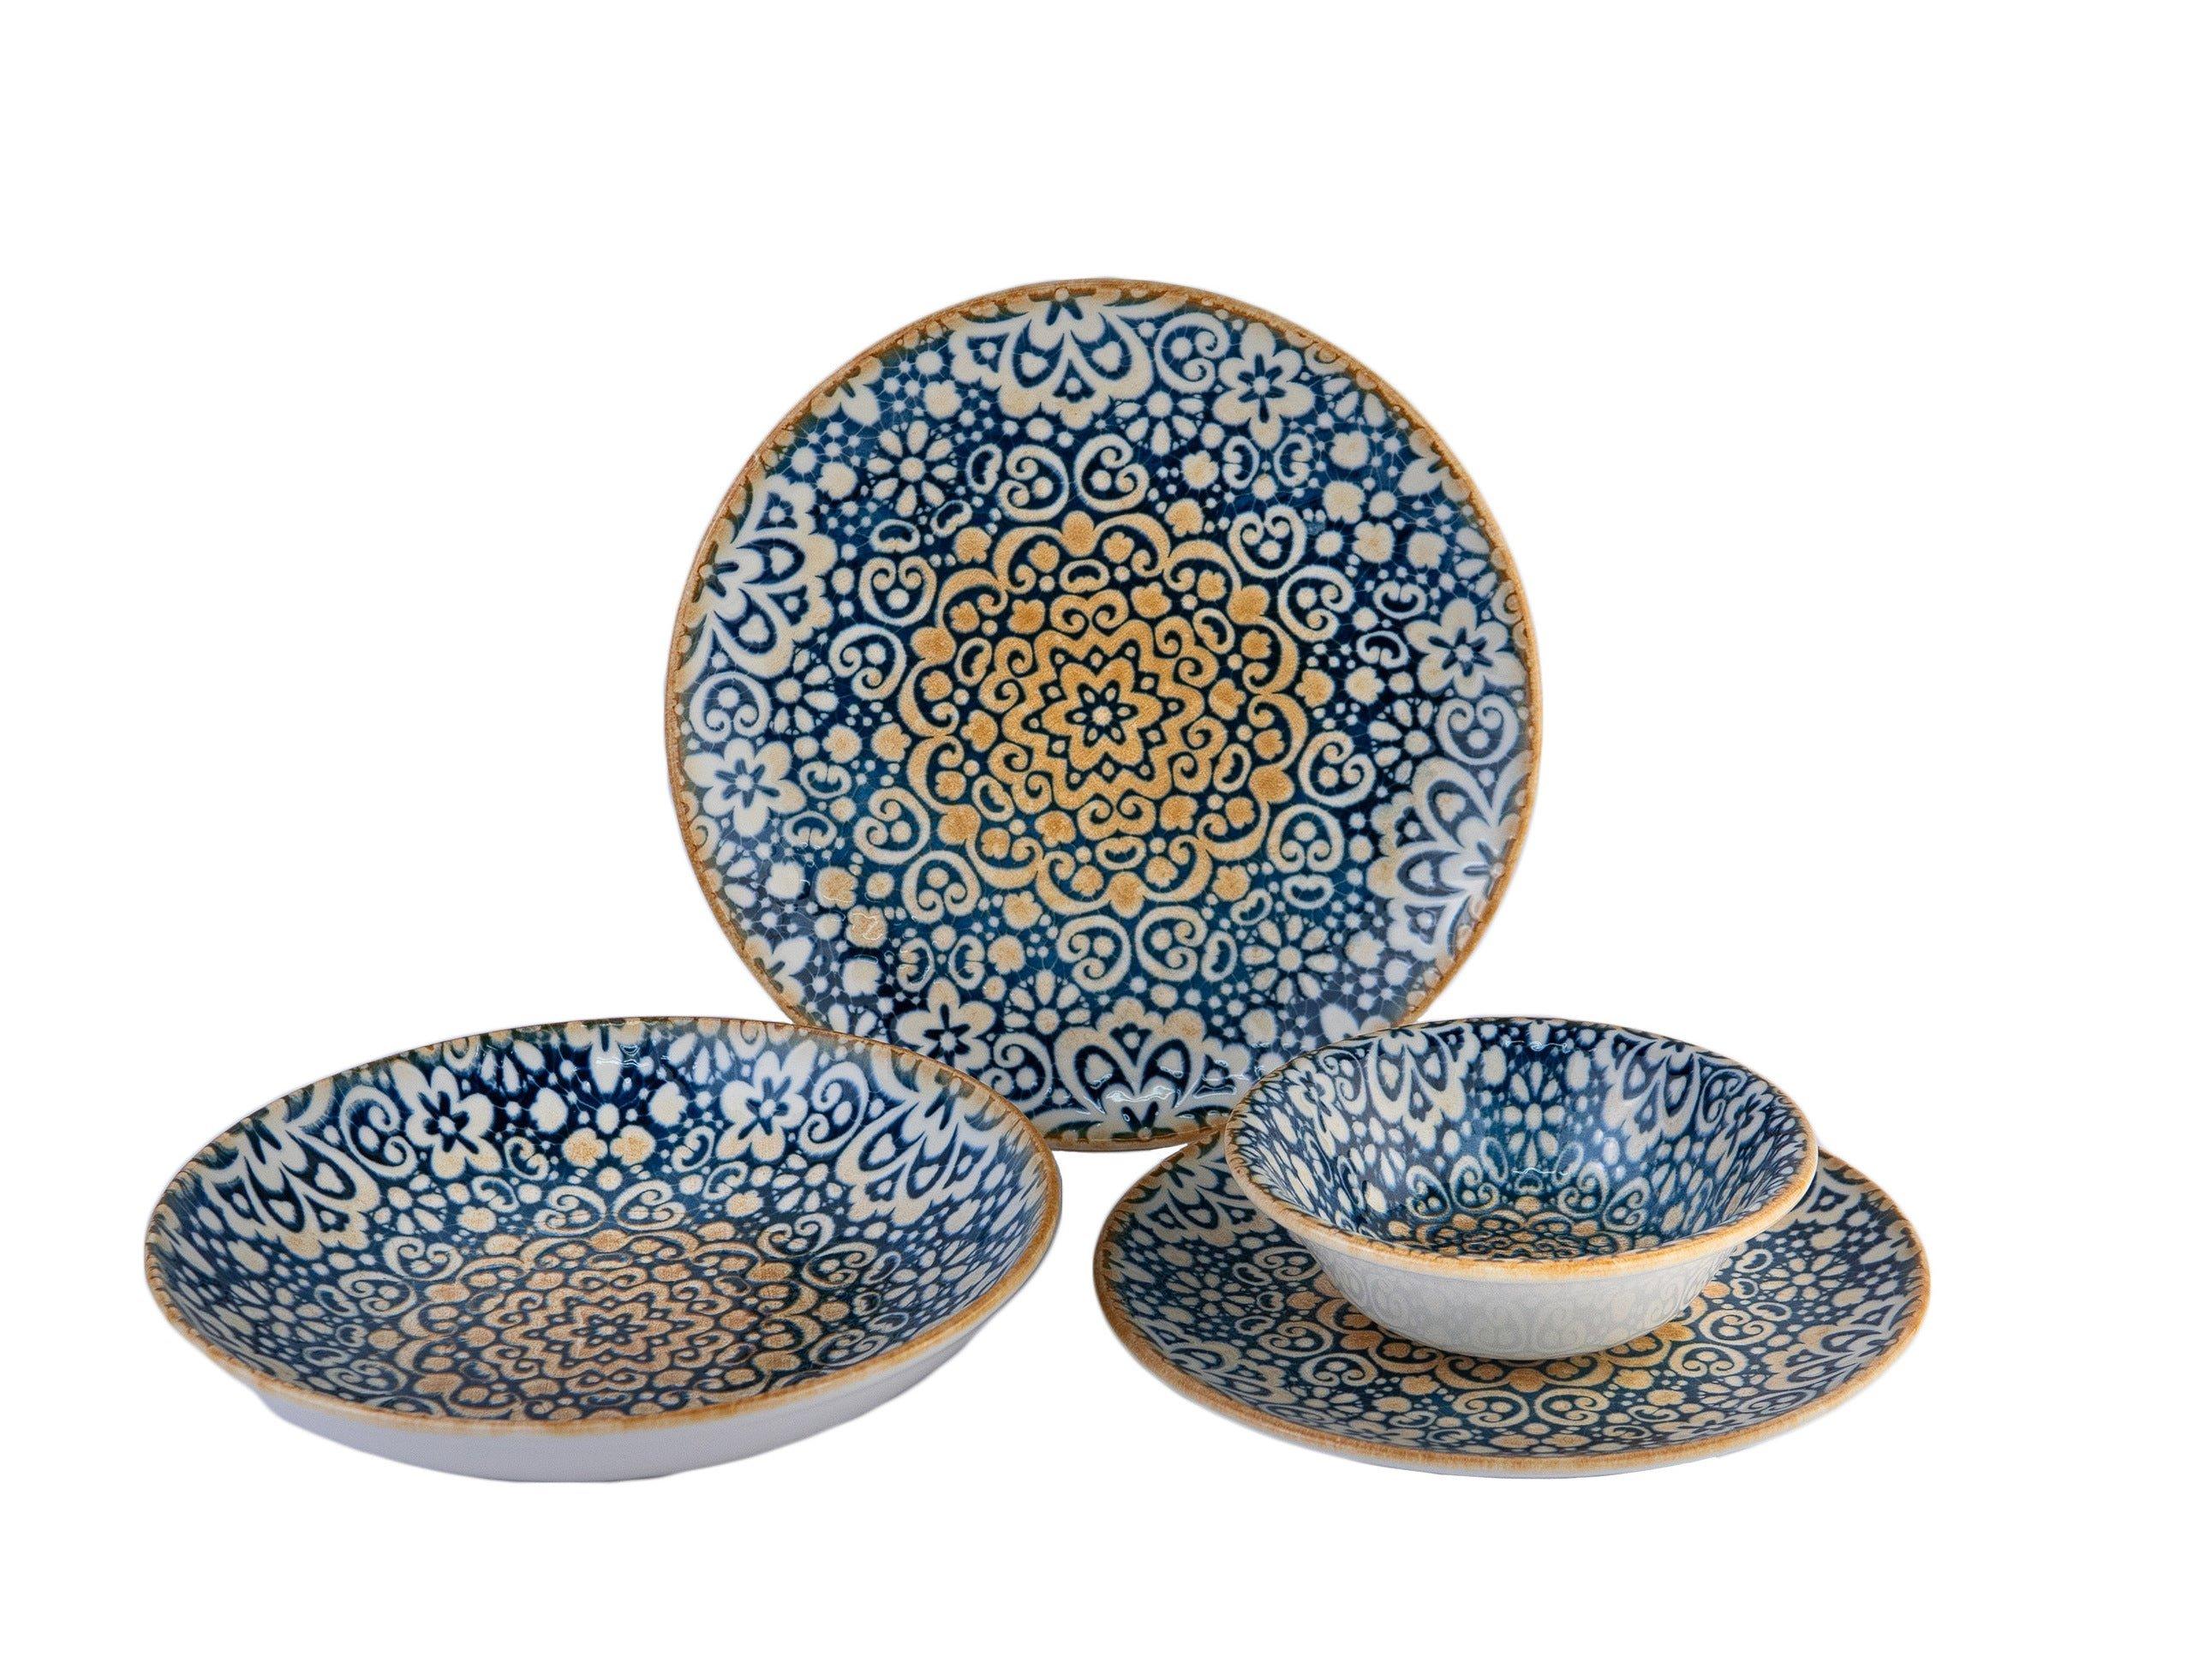 Bonna Ensembles de vaisselle - Alhambra - 24 pièces - 6 Personnes - Porcelaine  